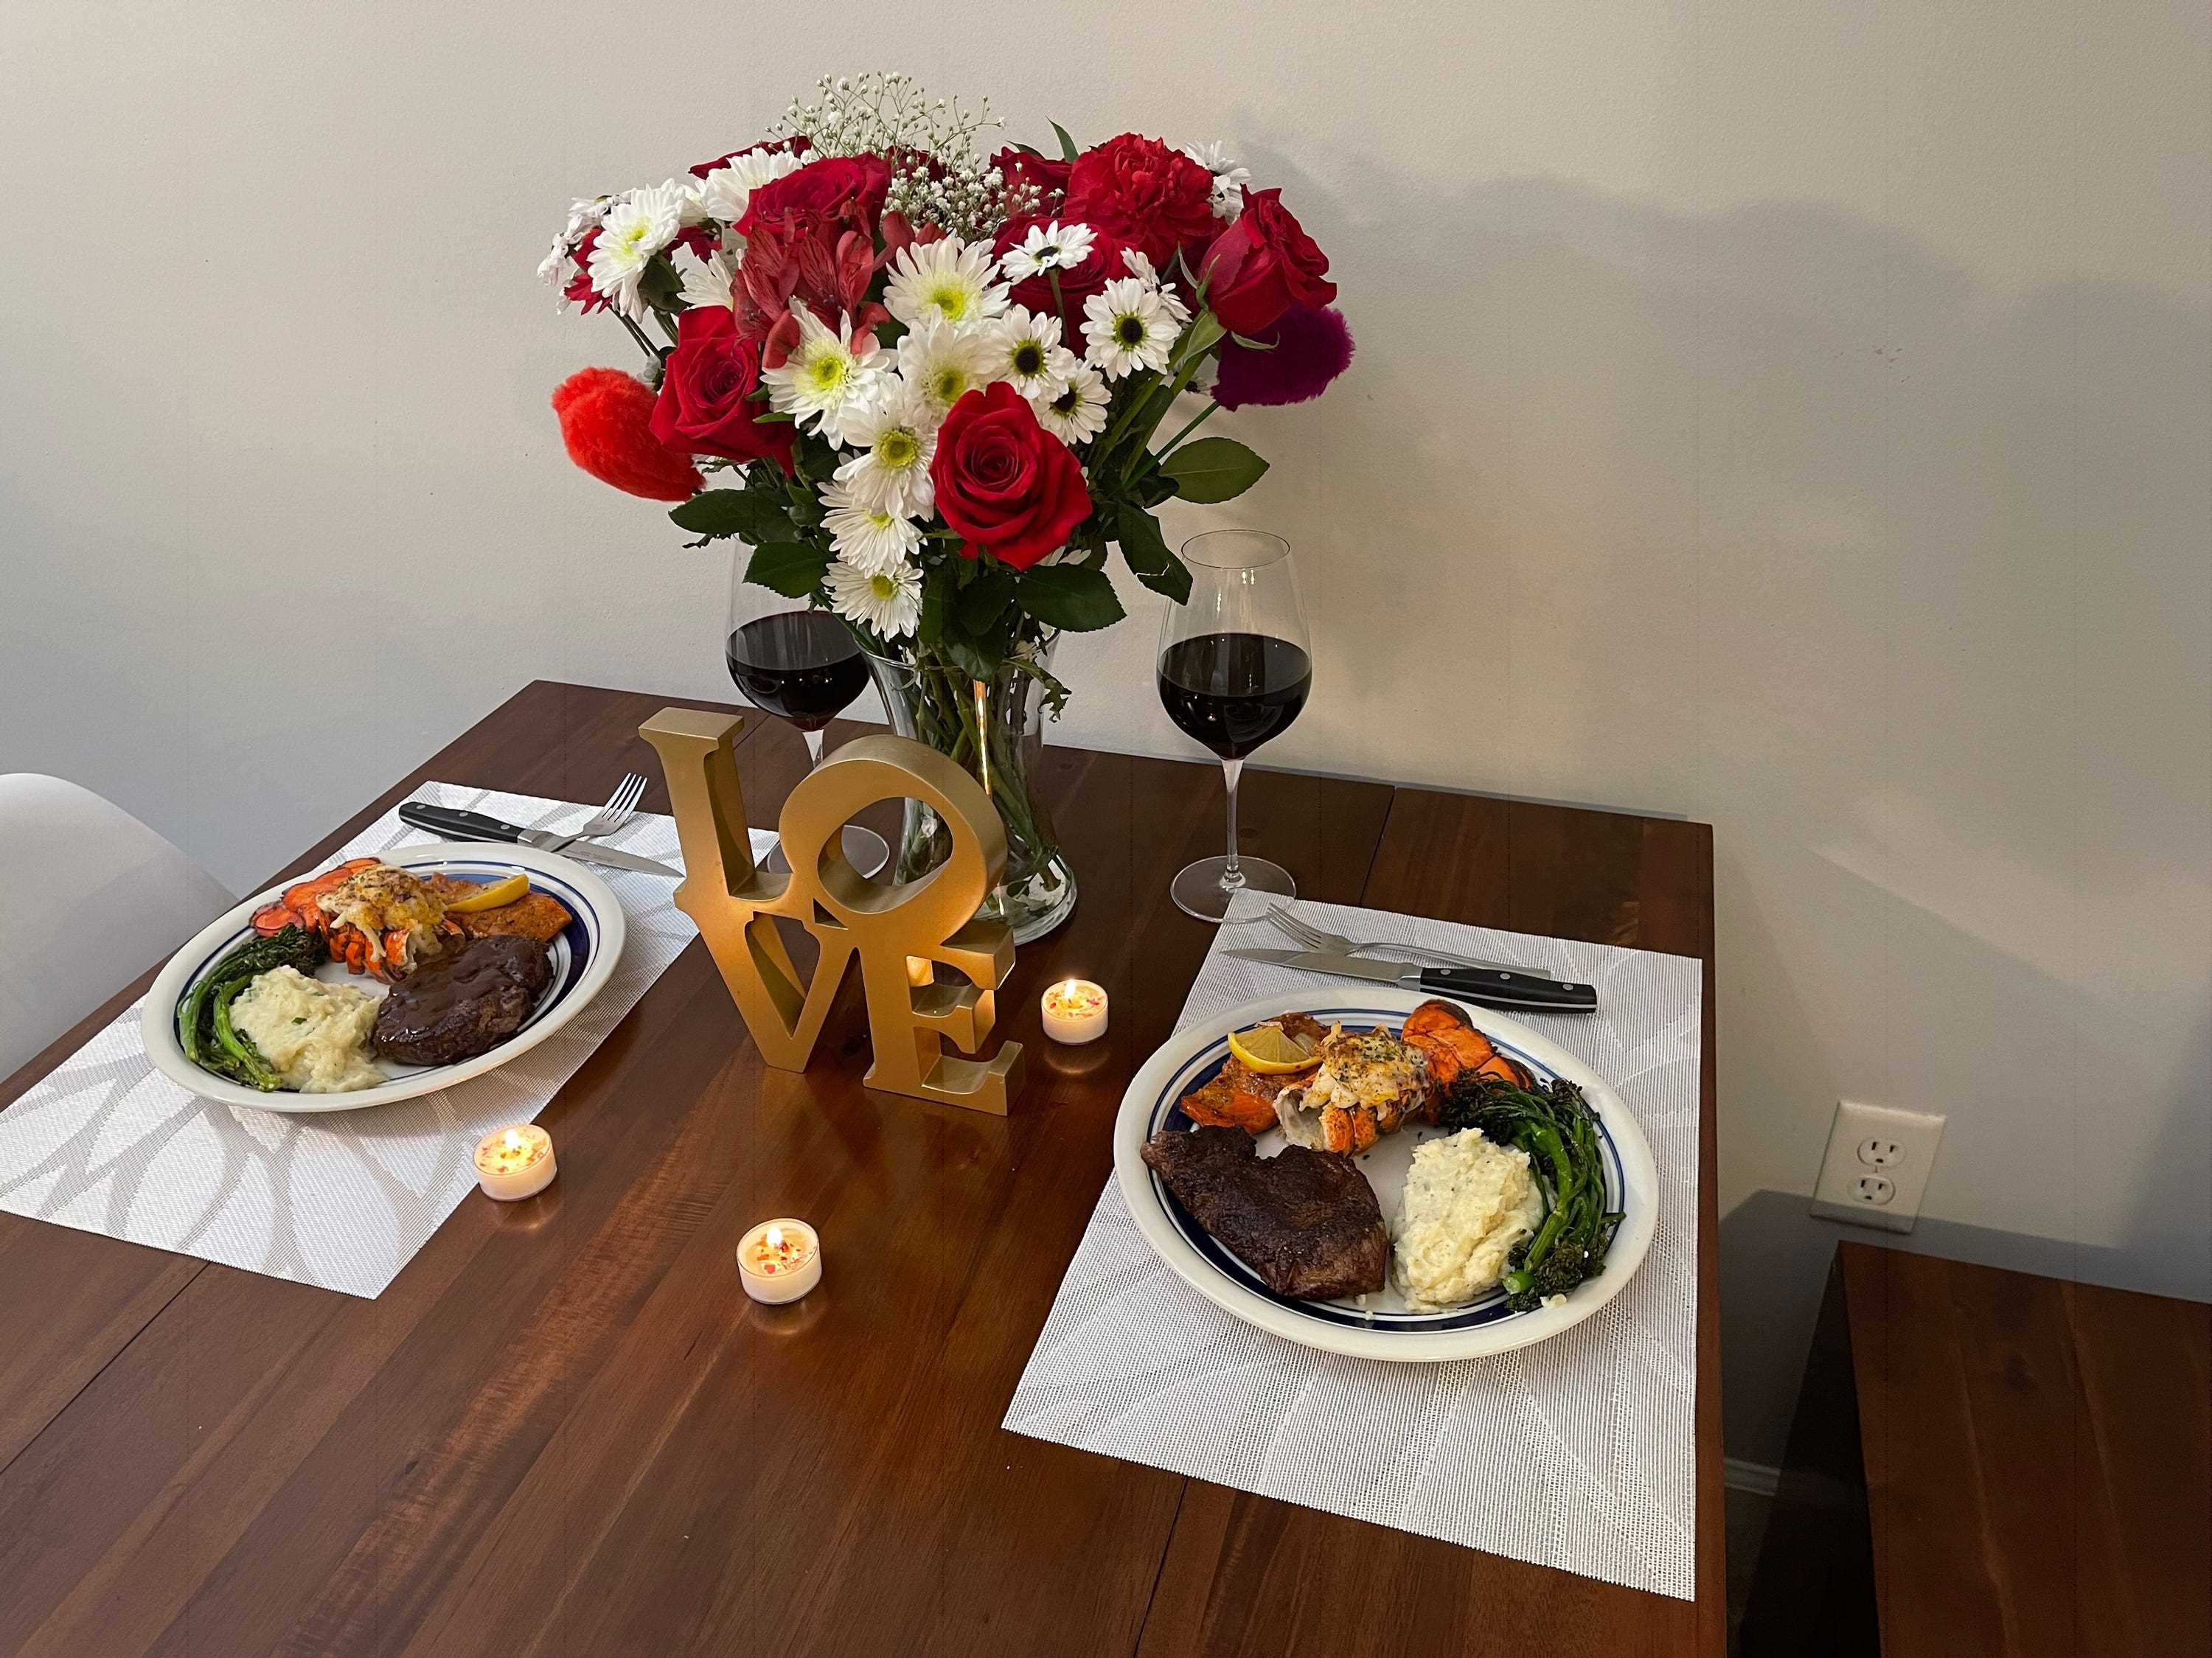 Transformer Table verdichtet zu einem Tisch für zwei Personen mit einem Valentinstagsessen